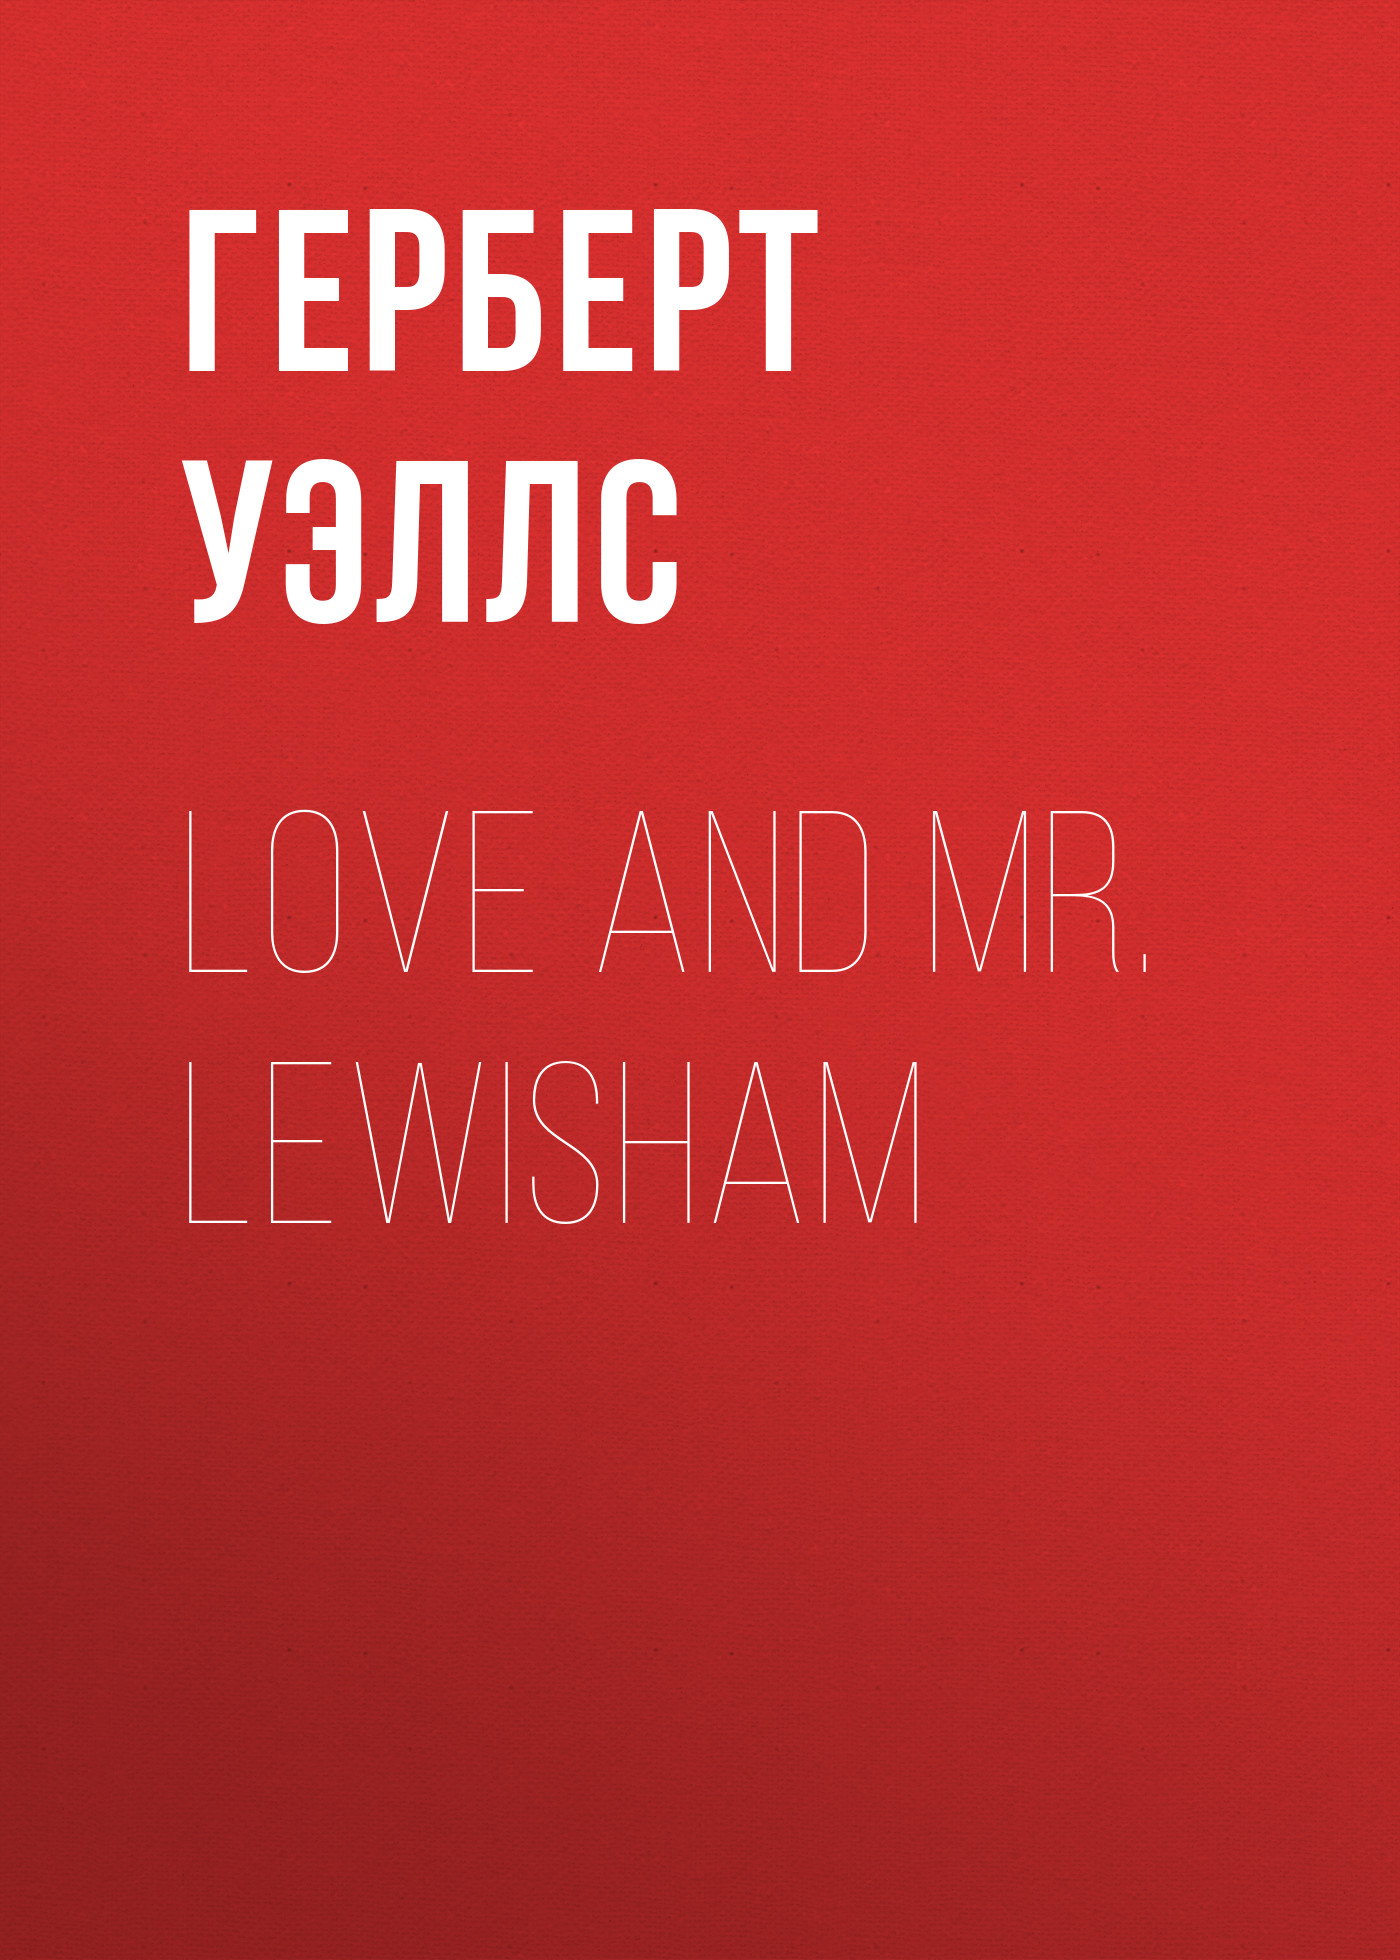 Книга Love and Mr. Lewisham из серии , созданная Герберт Уэллс, может относится к жанру Юмор: прочее, Зарубежная классика, Зарубежные любовные романы. Стоимость электронной книги Love and Mr. Lewisham с идентификатором 25559780 составляет 0 руб.